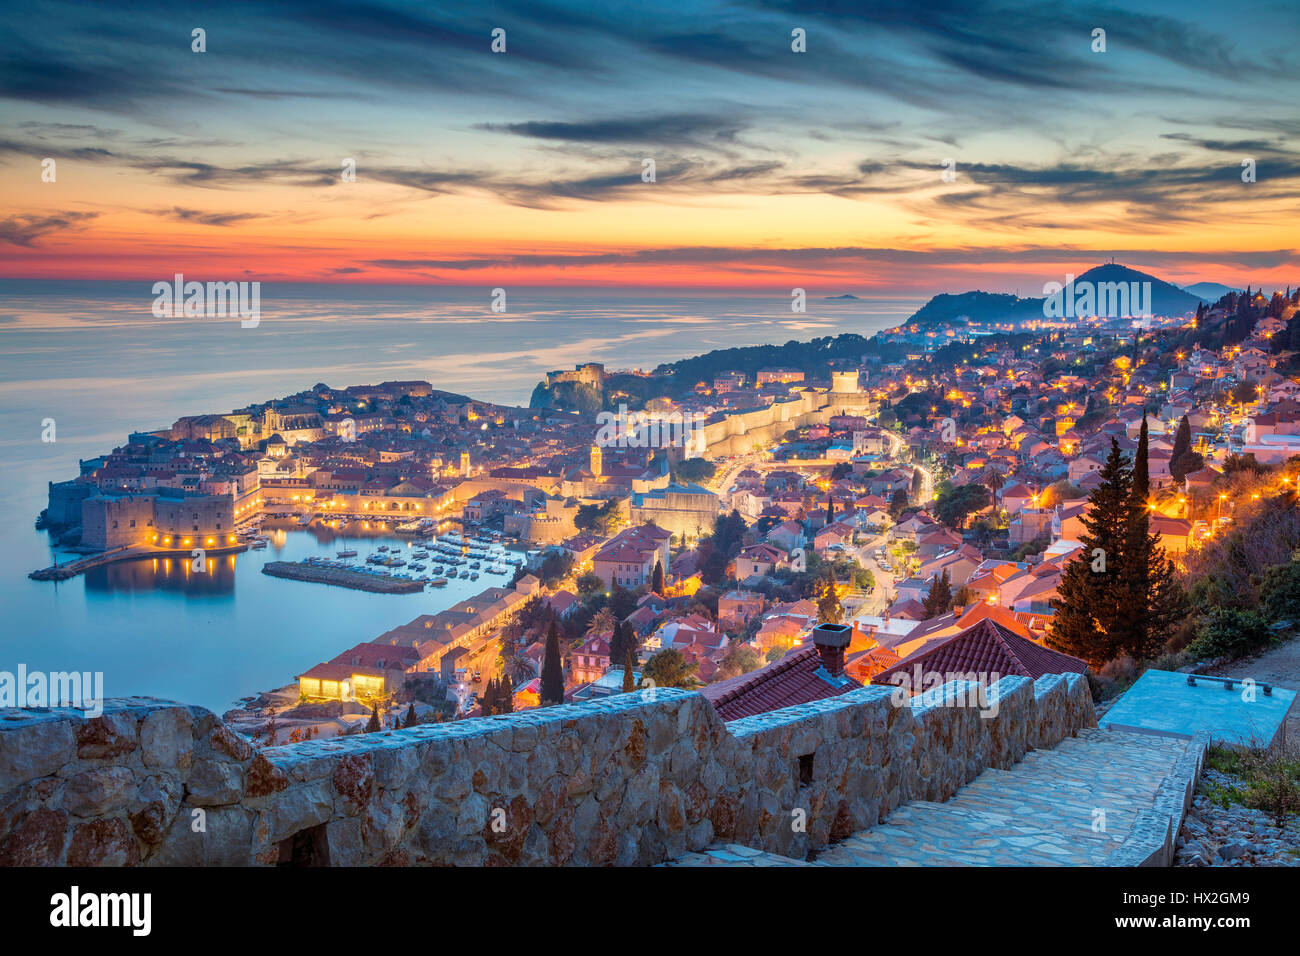 Dubrovnik, Croacia. Bonito y romántico casco antiguo de Dubrovnik durante la puesta de sol. Foto de stock